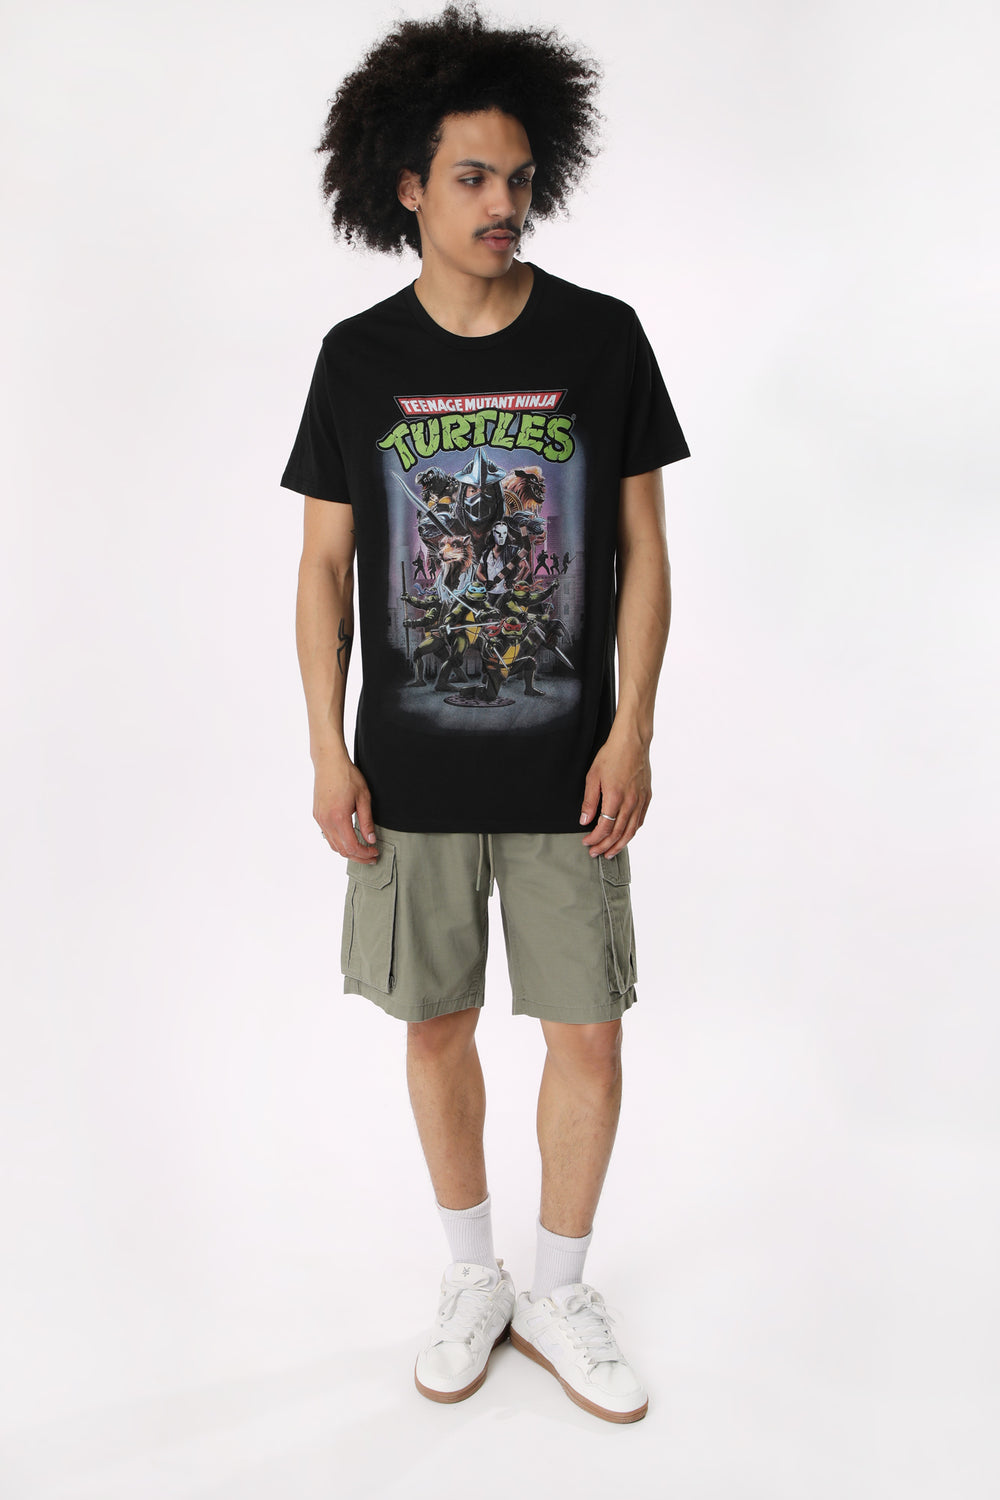 T-Shirt Imprimé Teenage Mutant Ninja Turtles Homme T-Shirt Imprimé Teenage Mutant Ninja Turtles Homme